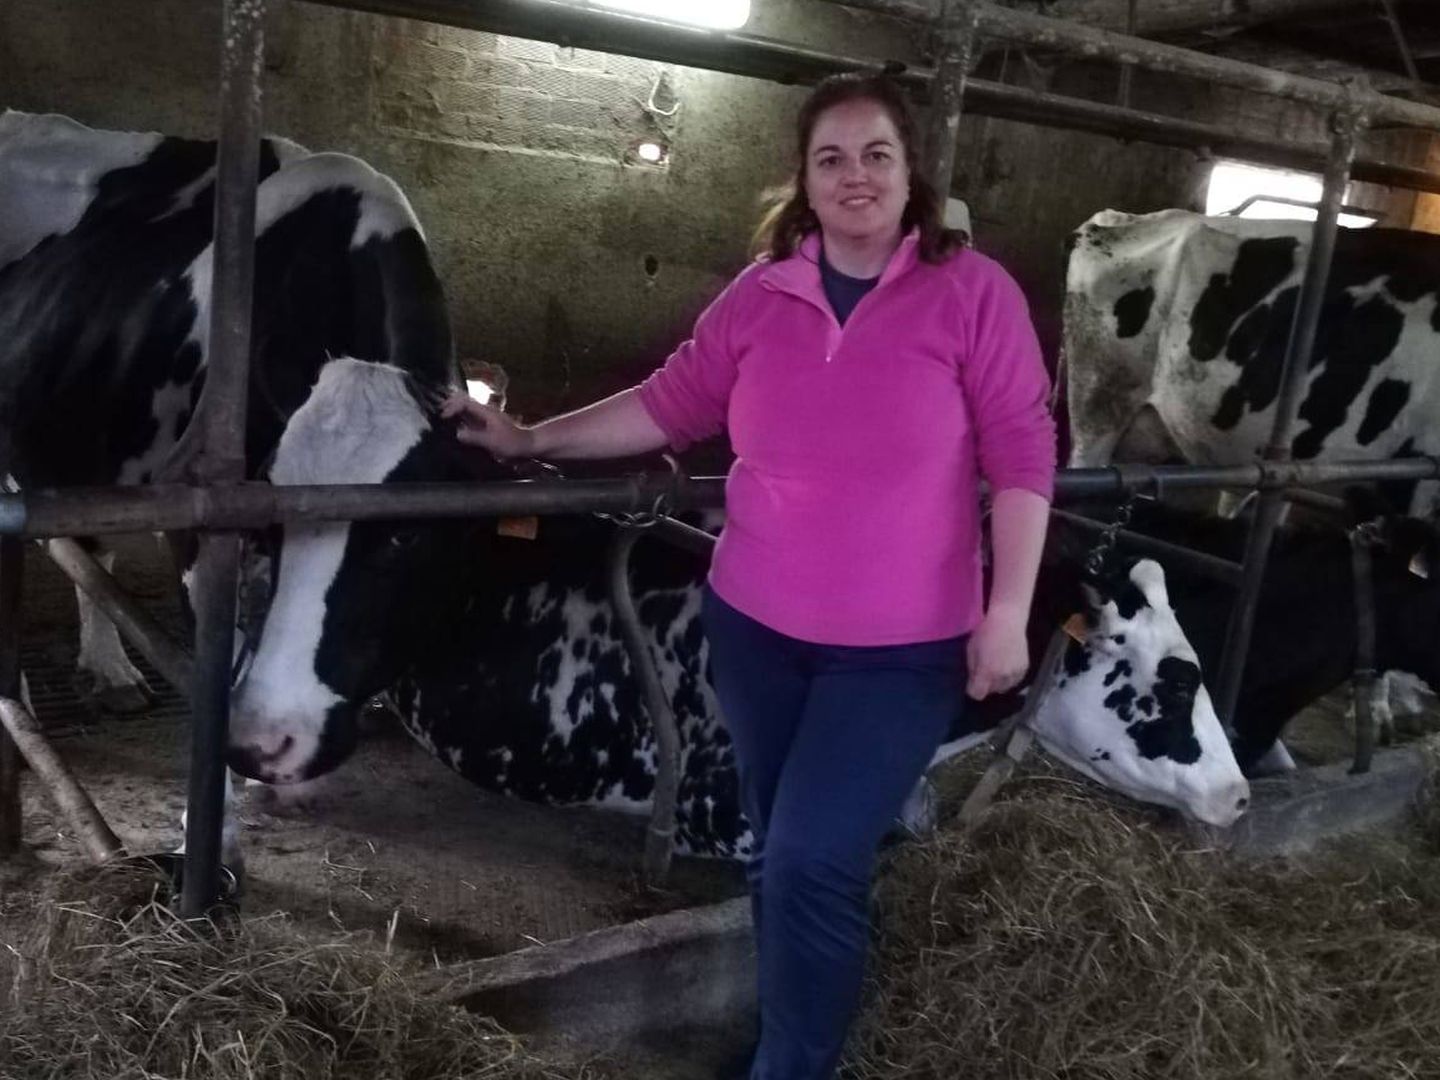  Montserrat Fernández cuida de su ganado en Tineo (Asturias). (Foto cedida)